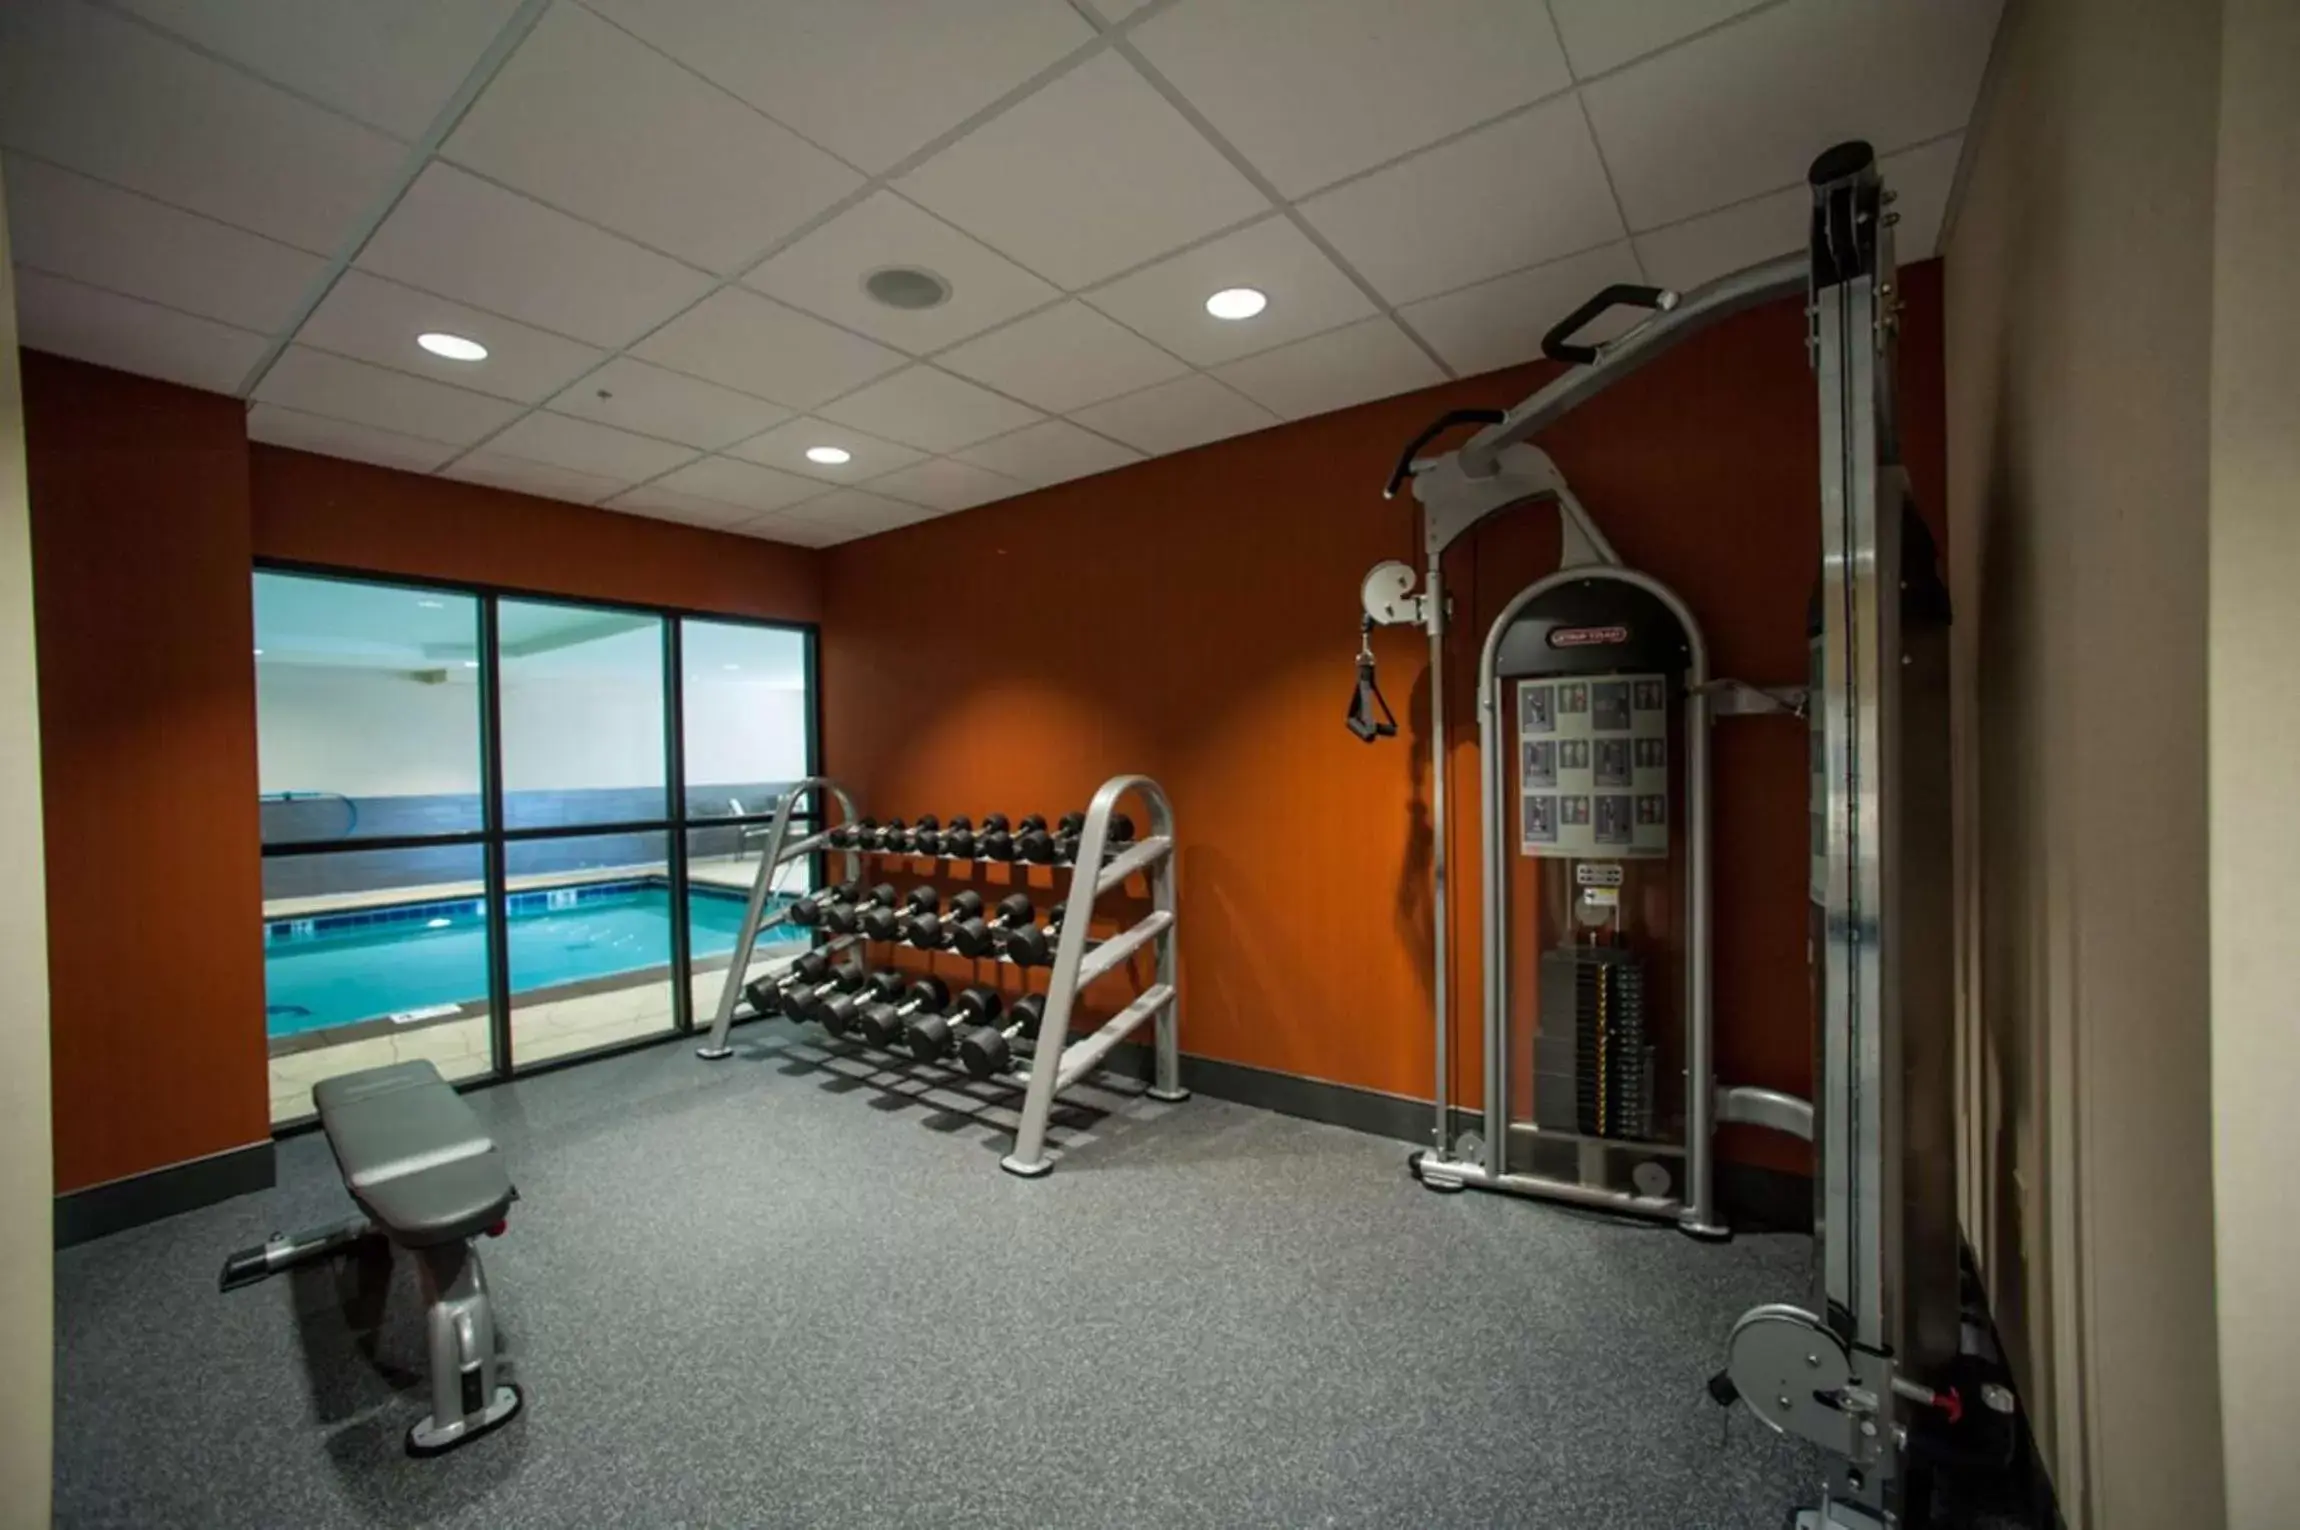 Fitness centre/facilities, Fitness Center/Facilities in Hampton Inn Fort Morgan